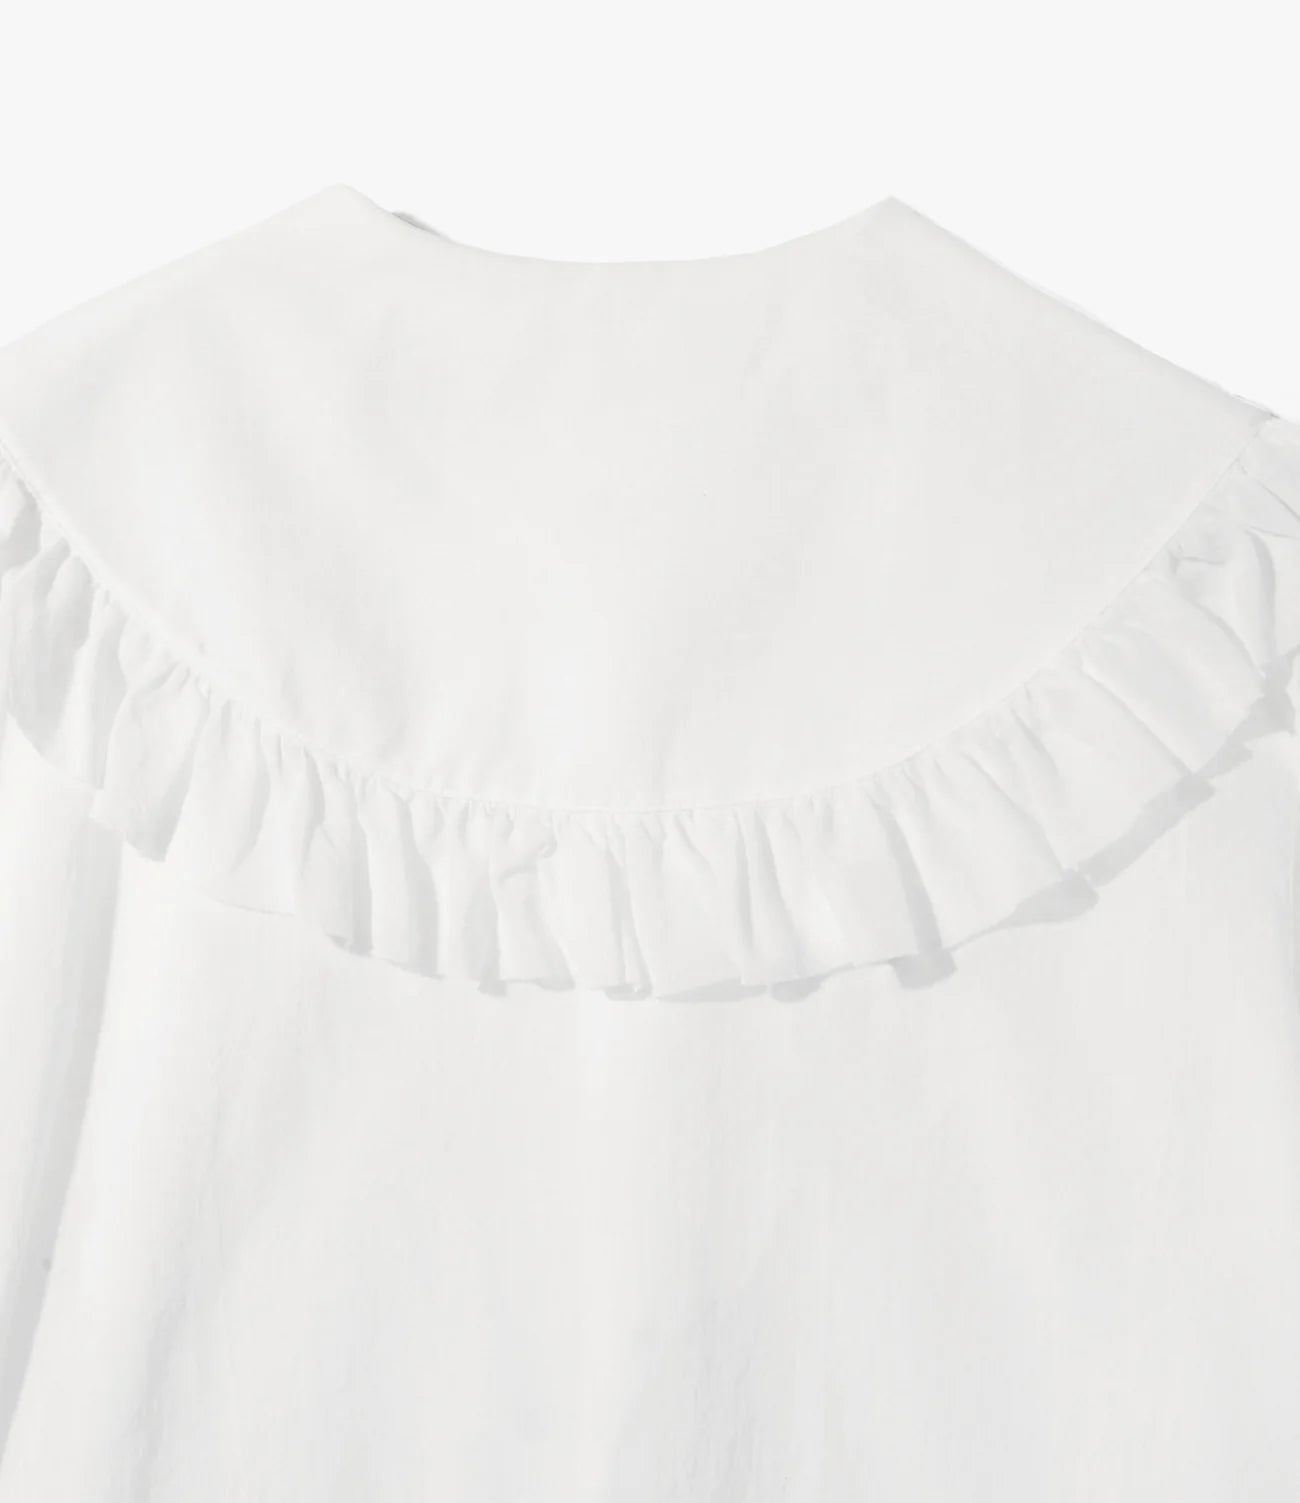 RhodolirioN Spencer Shirt - Boil - White – RhodolirioN – Nepenthes London